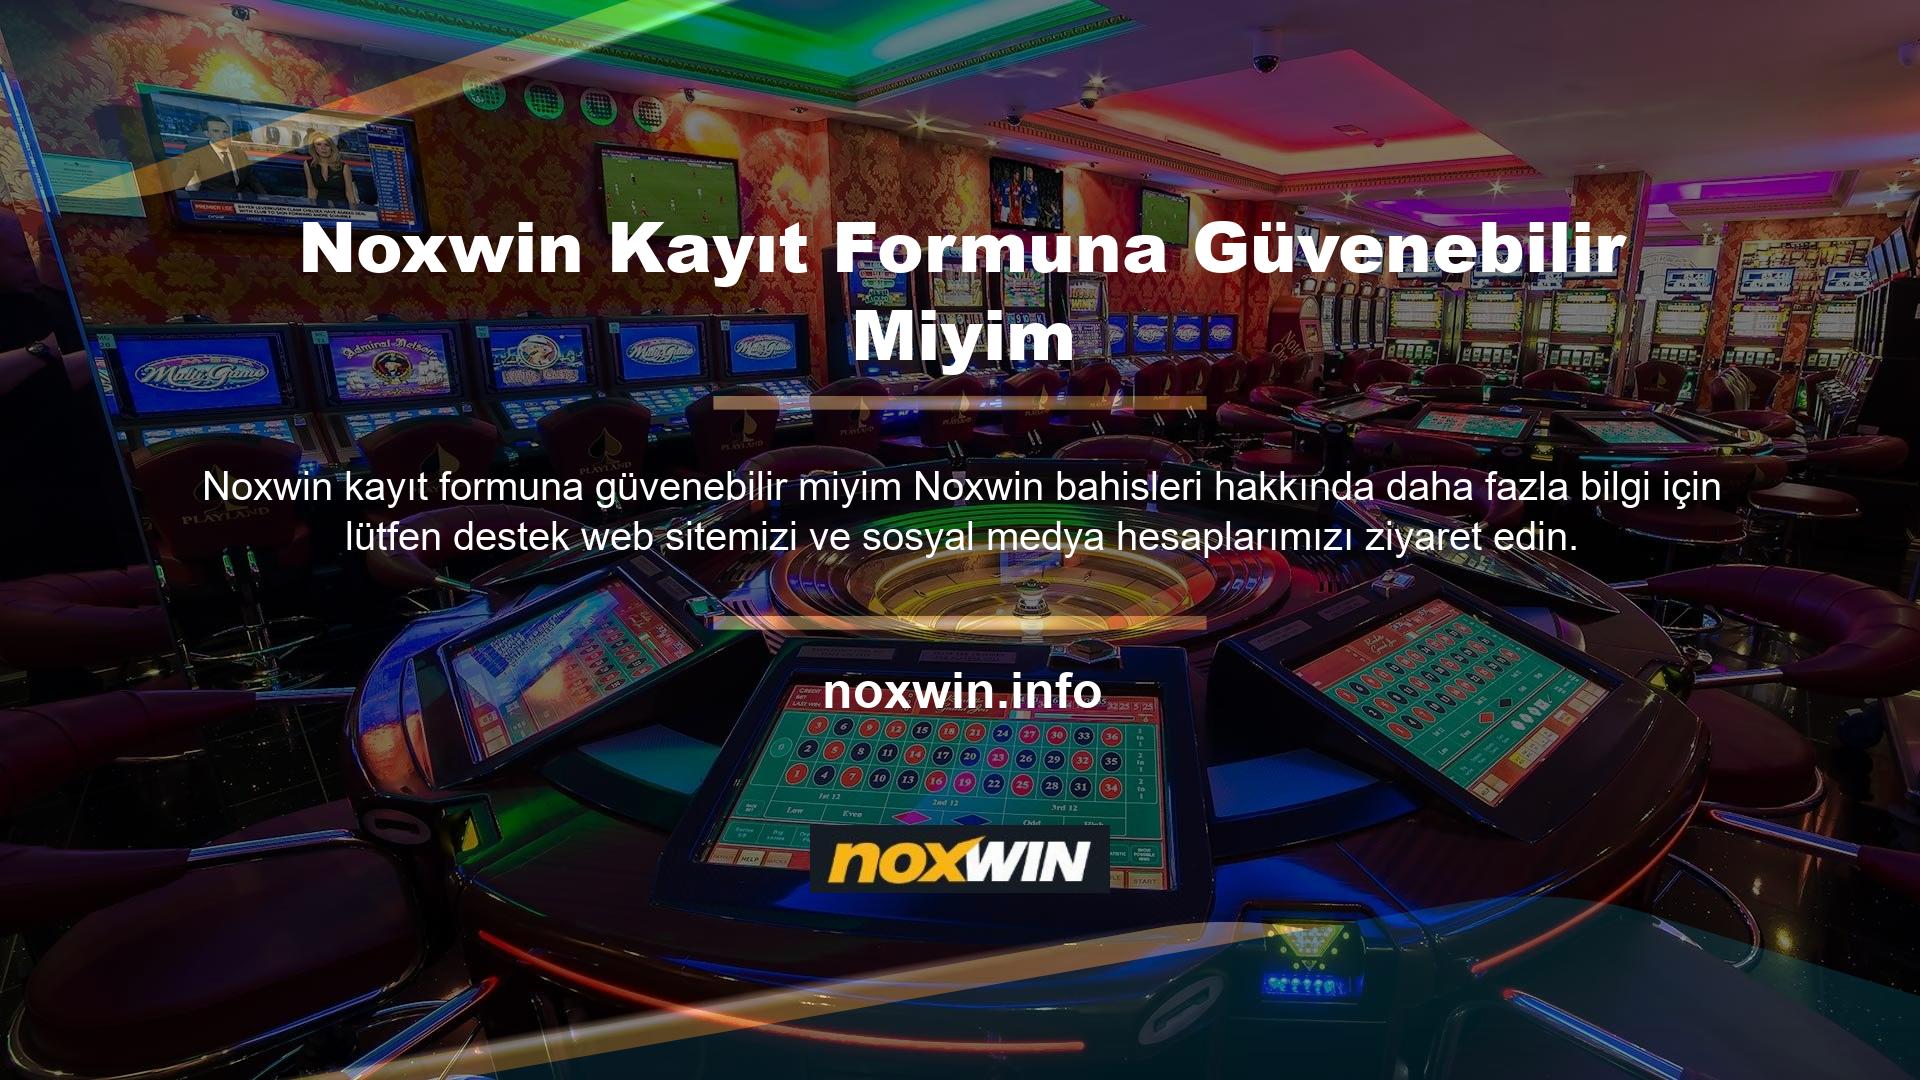 Noxwin, buna inanabiliyor musun? Noxwin tüm hizmet seçeneklerinin güvenilir olduğunu göstermiştir